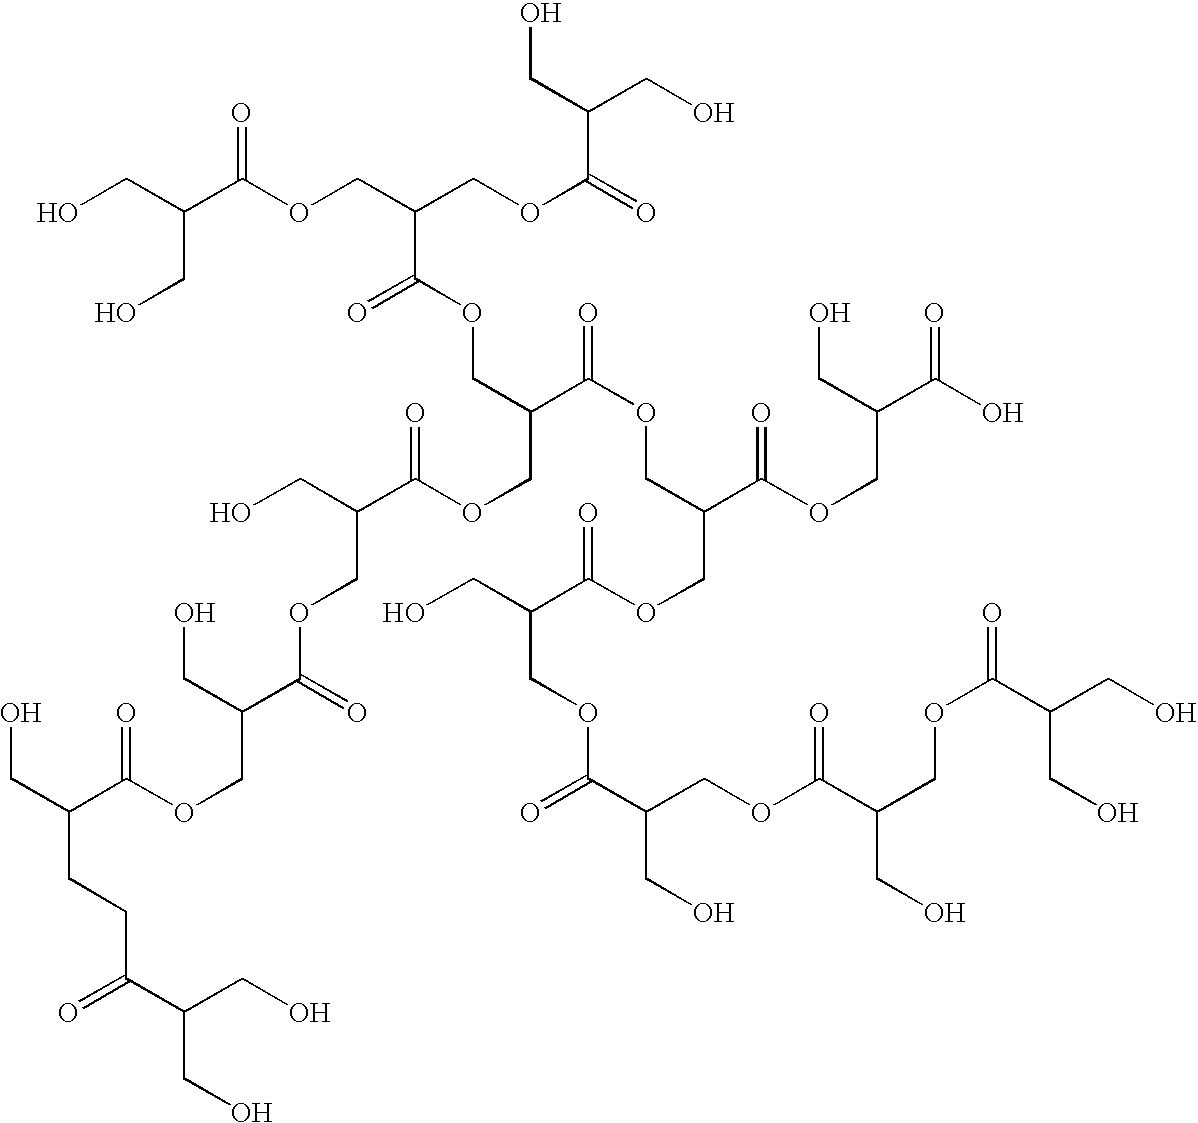 Novel polymeric co-initiators